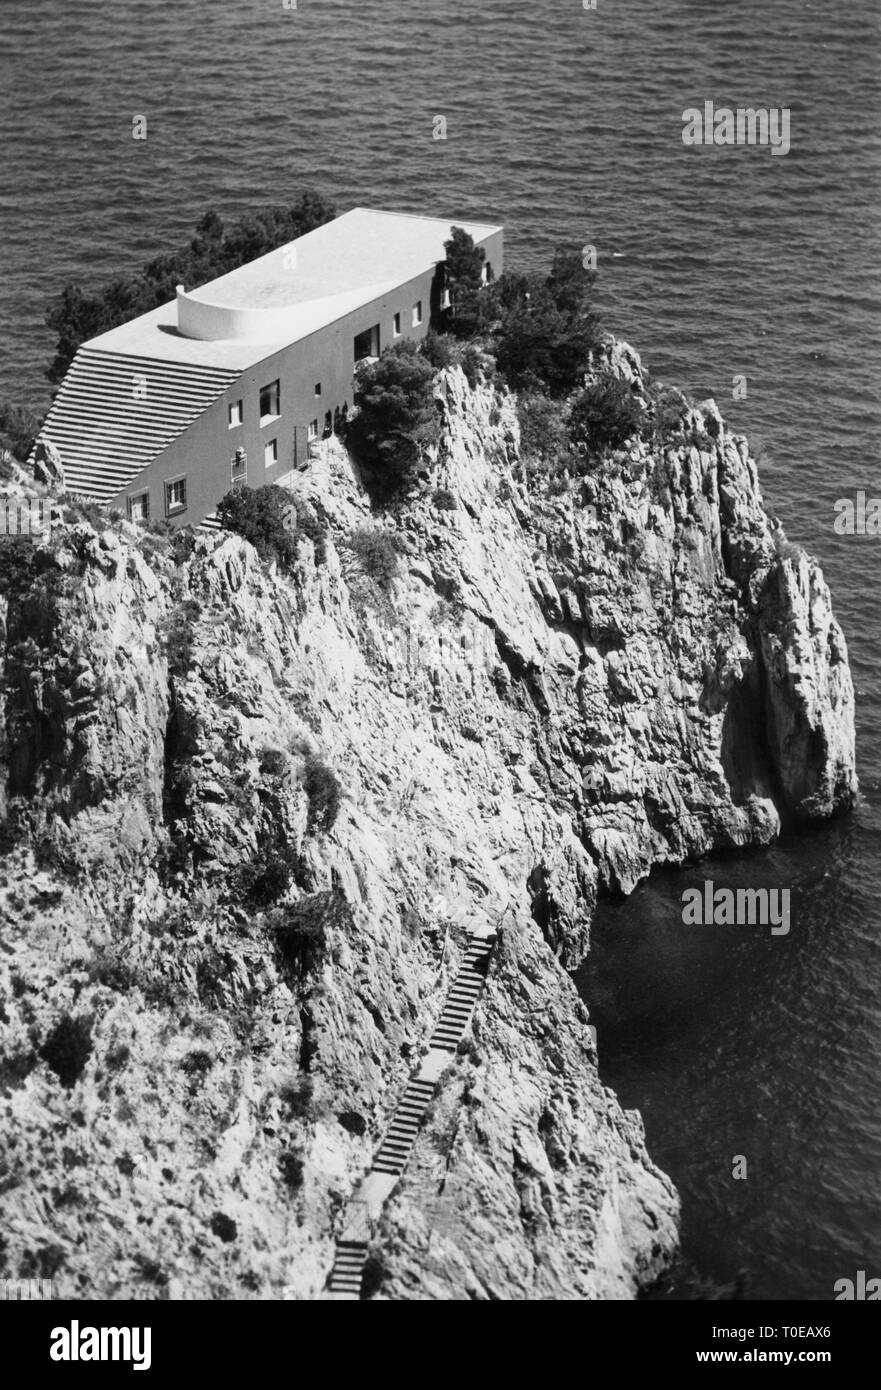 Italy, Campania, Capri Island, view of the villa by Curzio Malaparte on Punta Massullo, 1968 Stock Photo